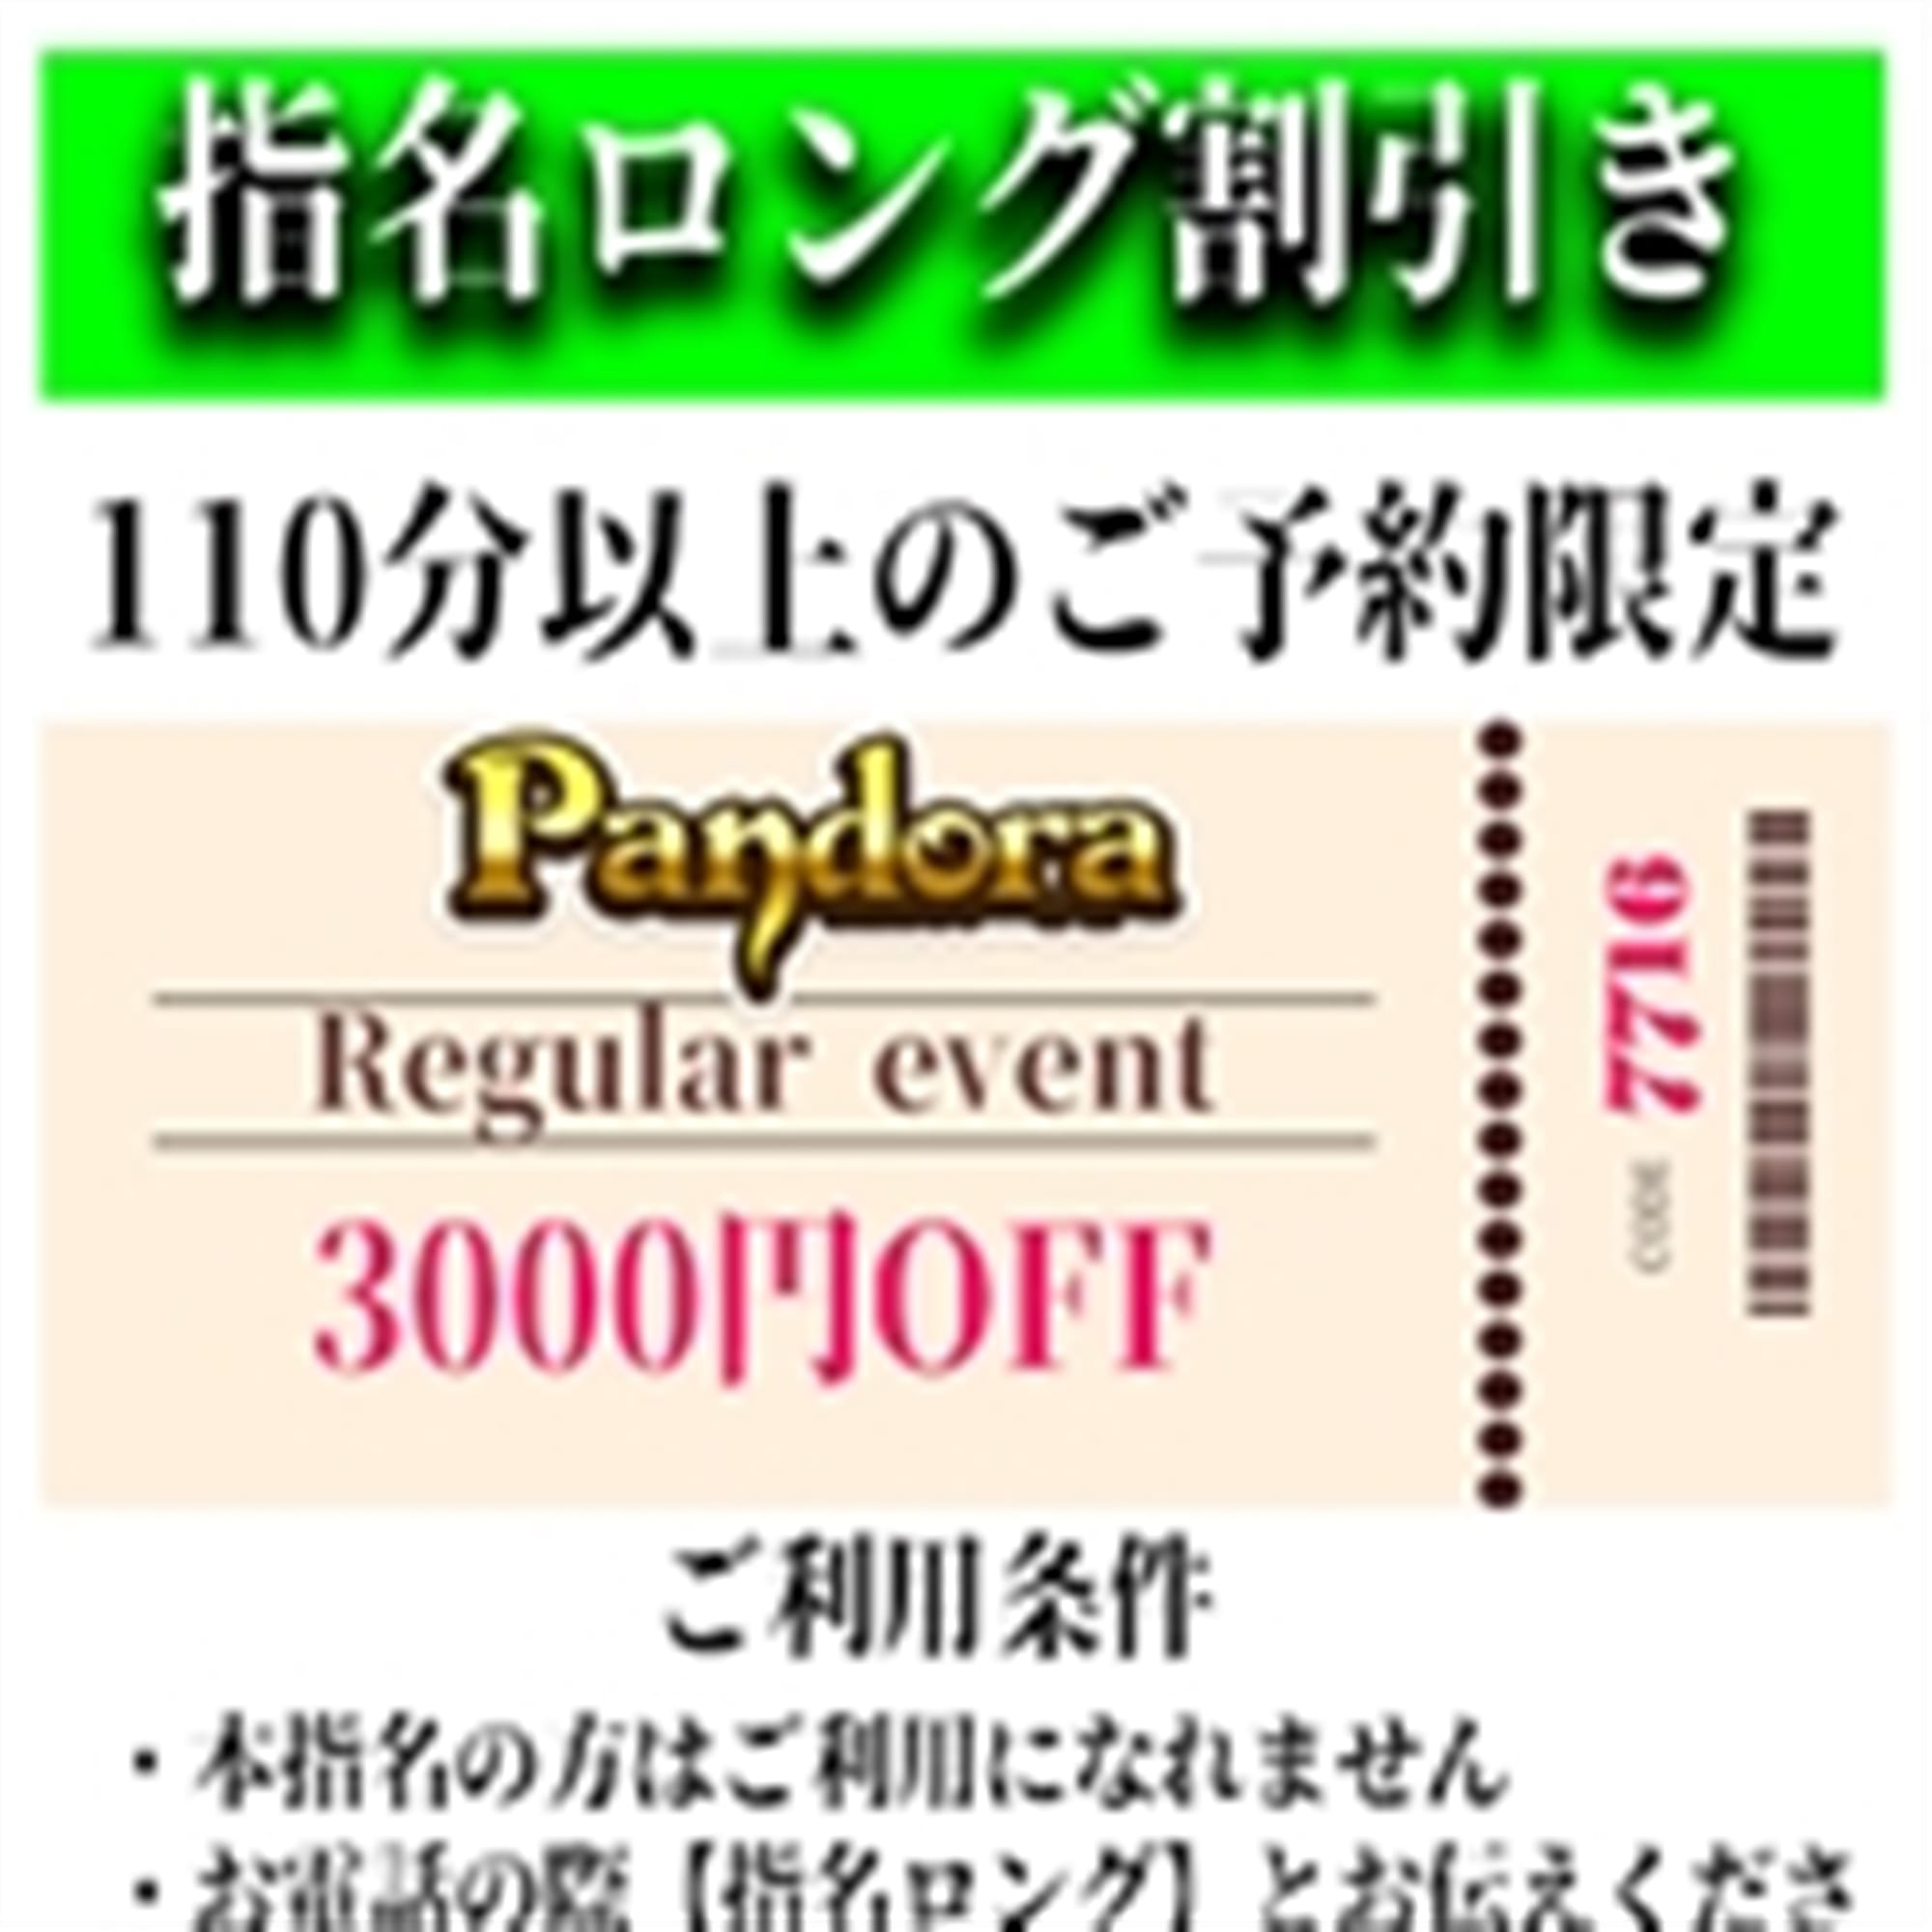 「ご指名のお客様も遊べるロングコース割引」04/27(土) 13:37 | Pandora(パンドラ)新潟のお得なニュース